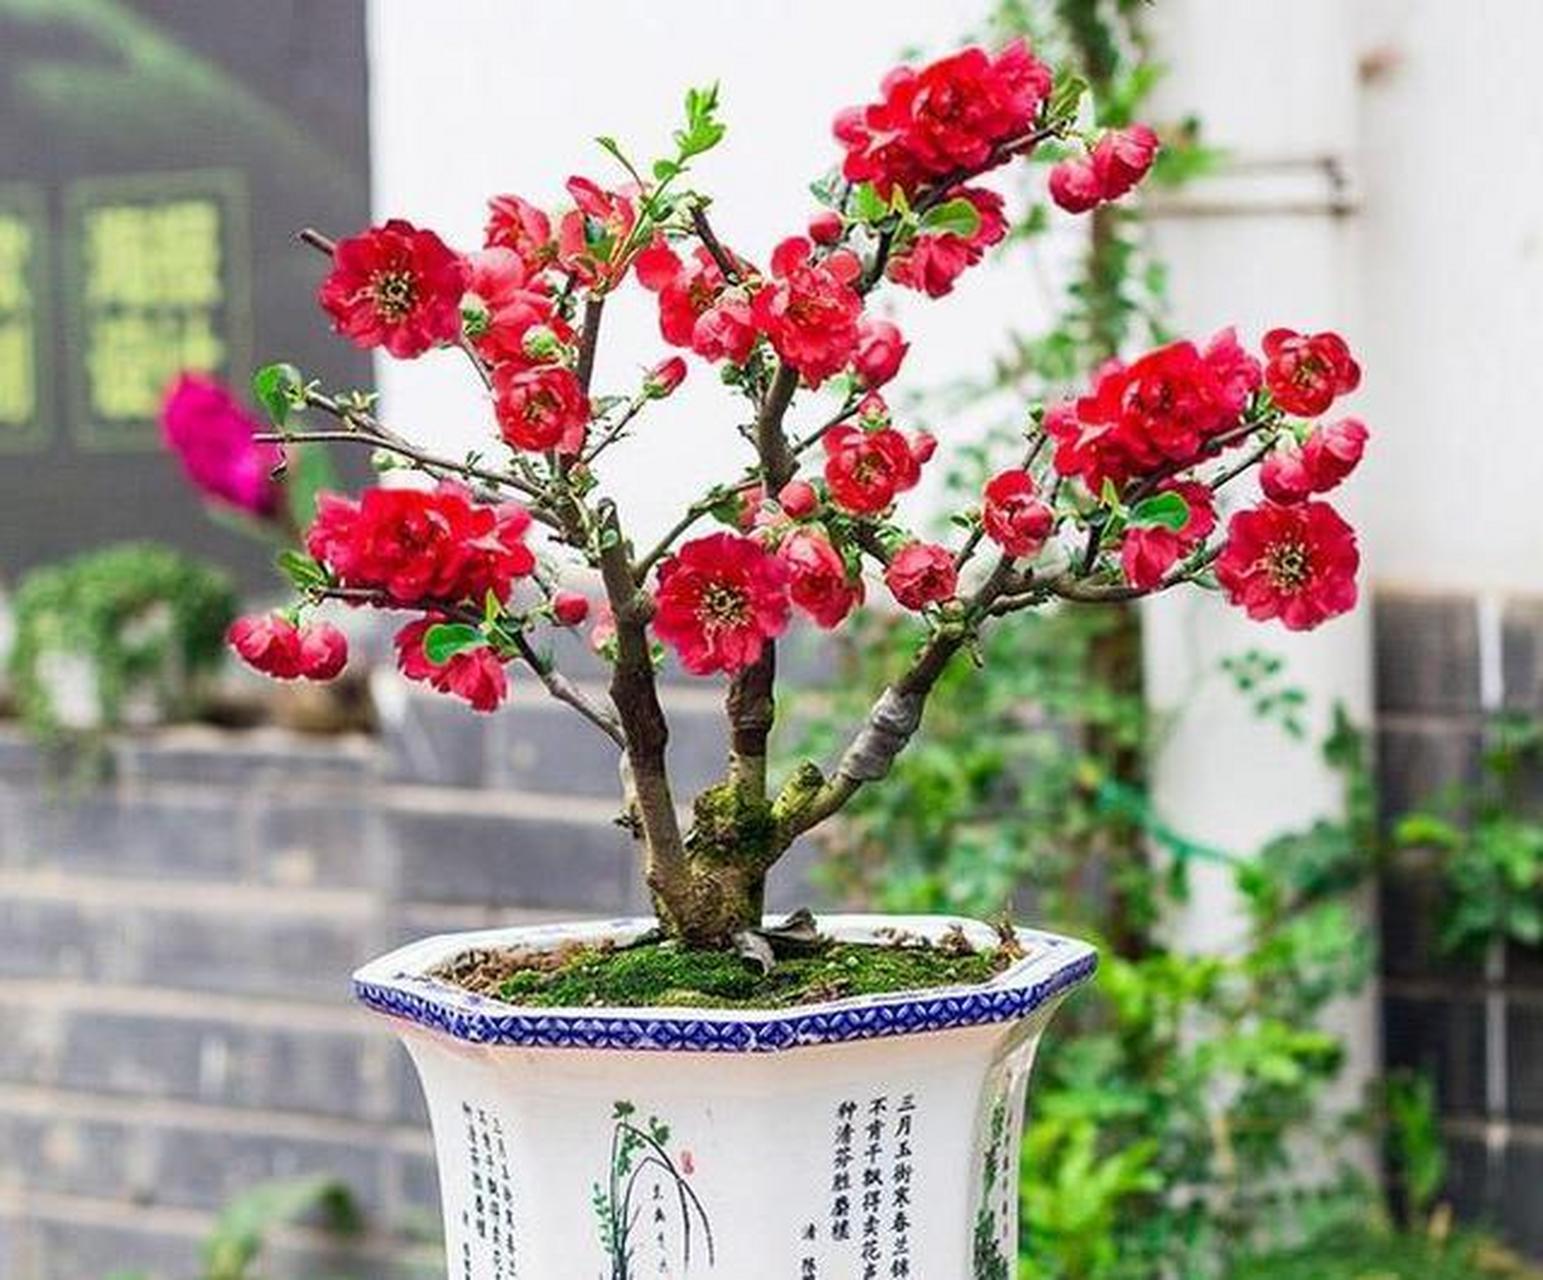 长寿冠海棠是打造老桩盆景的优良花卉 [666]长寿冠海棠是沂州海棠的